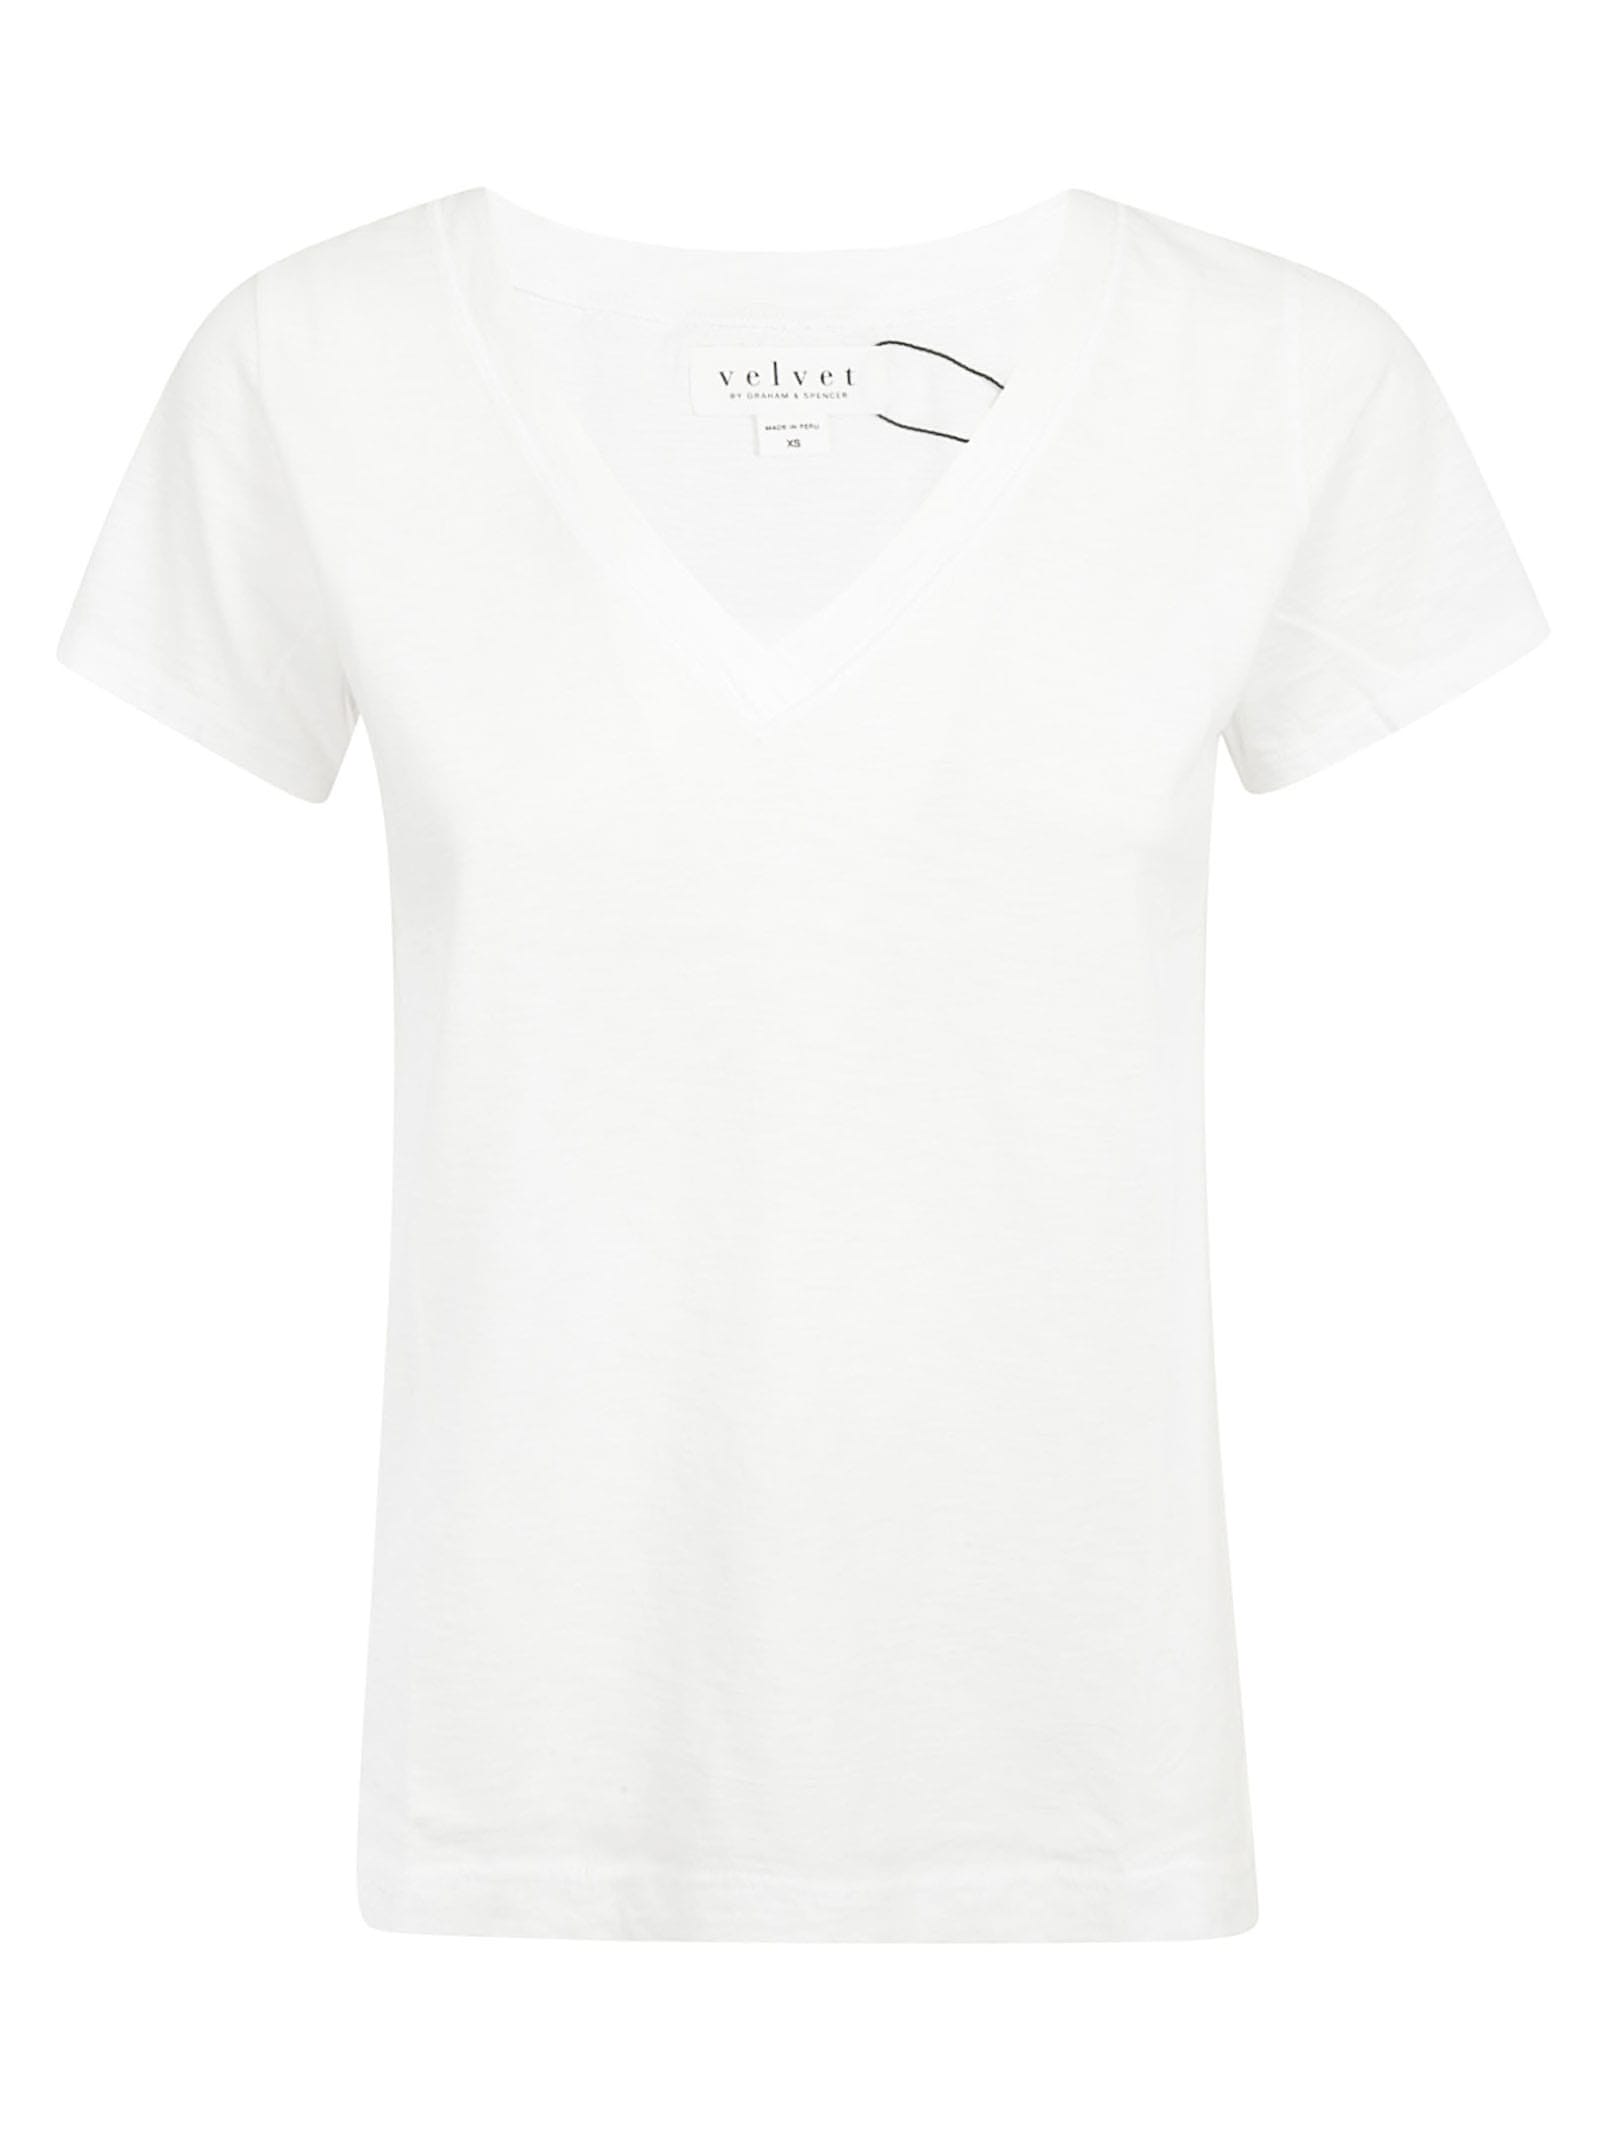 Velvet V-neck T-shirt